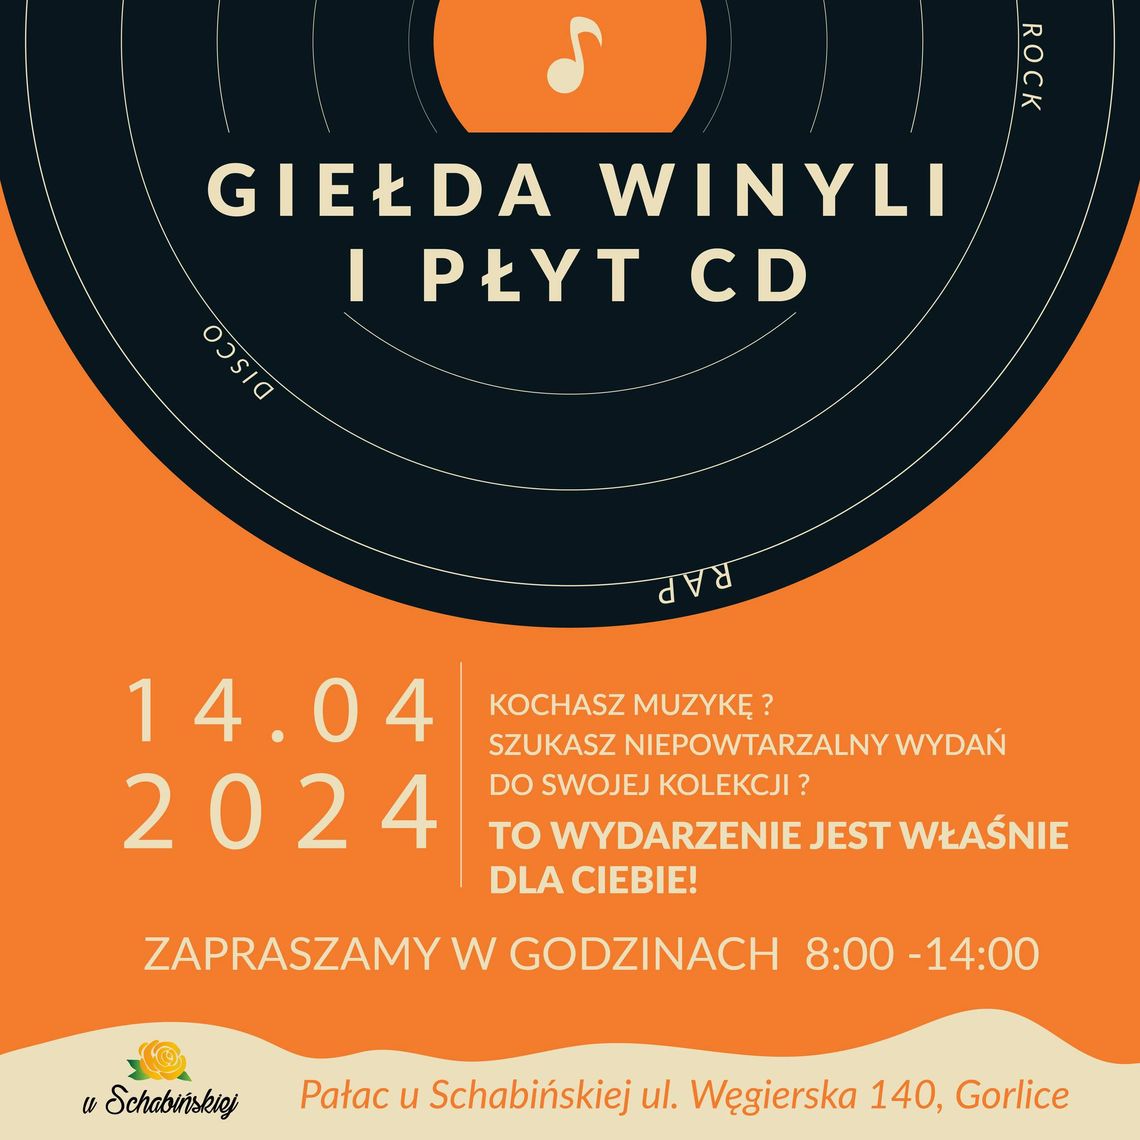 Giełda Winyli o Płyt CD – u Schabińskiej | halogorlice.info